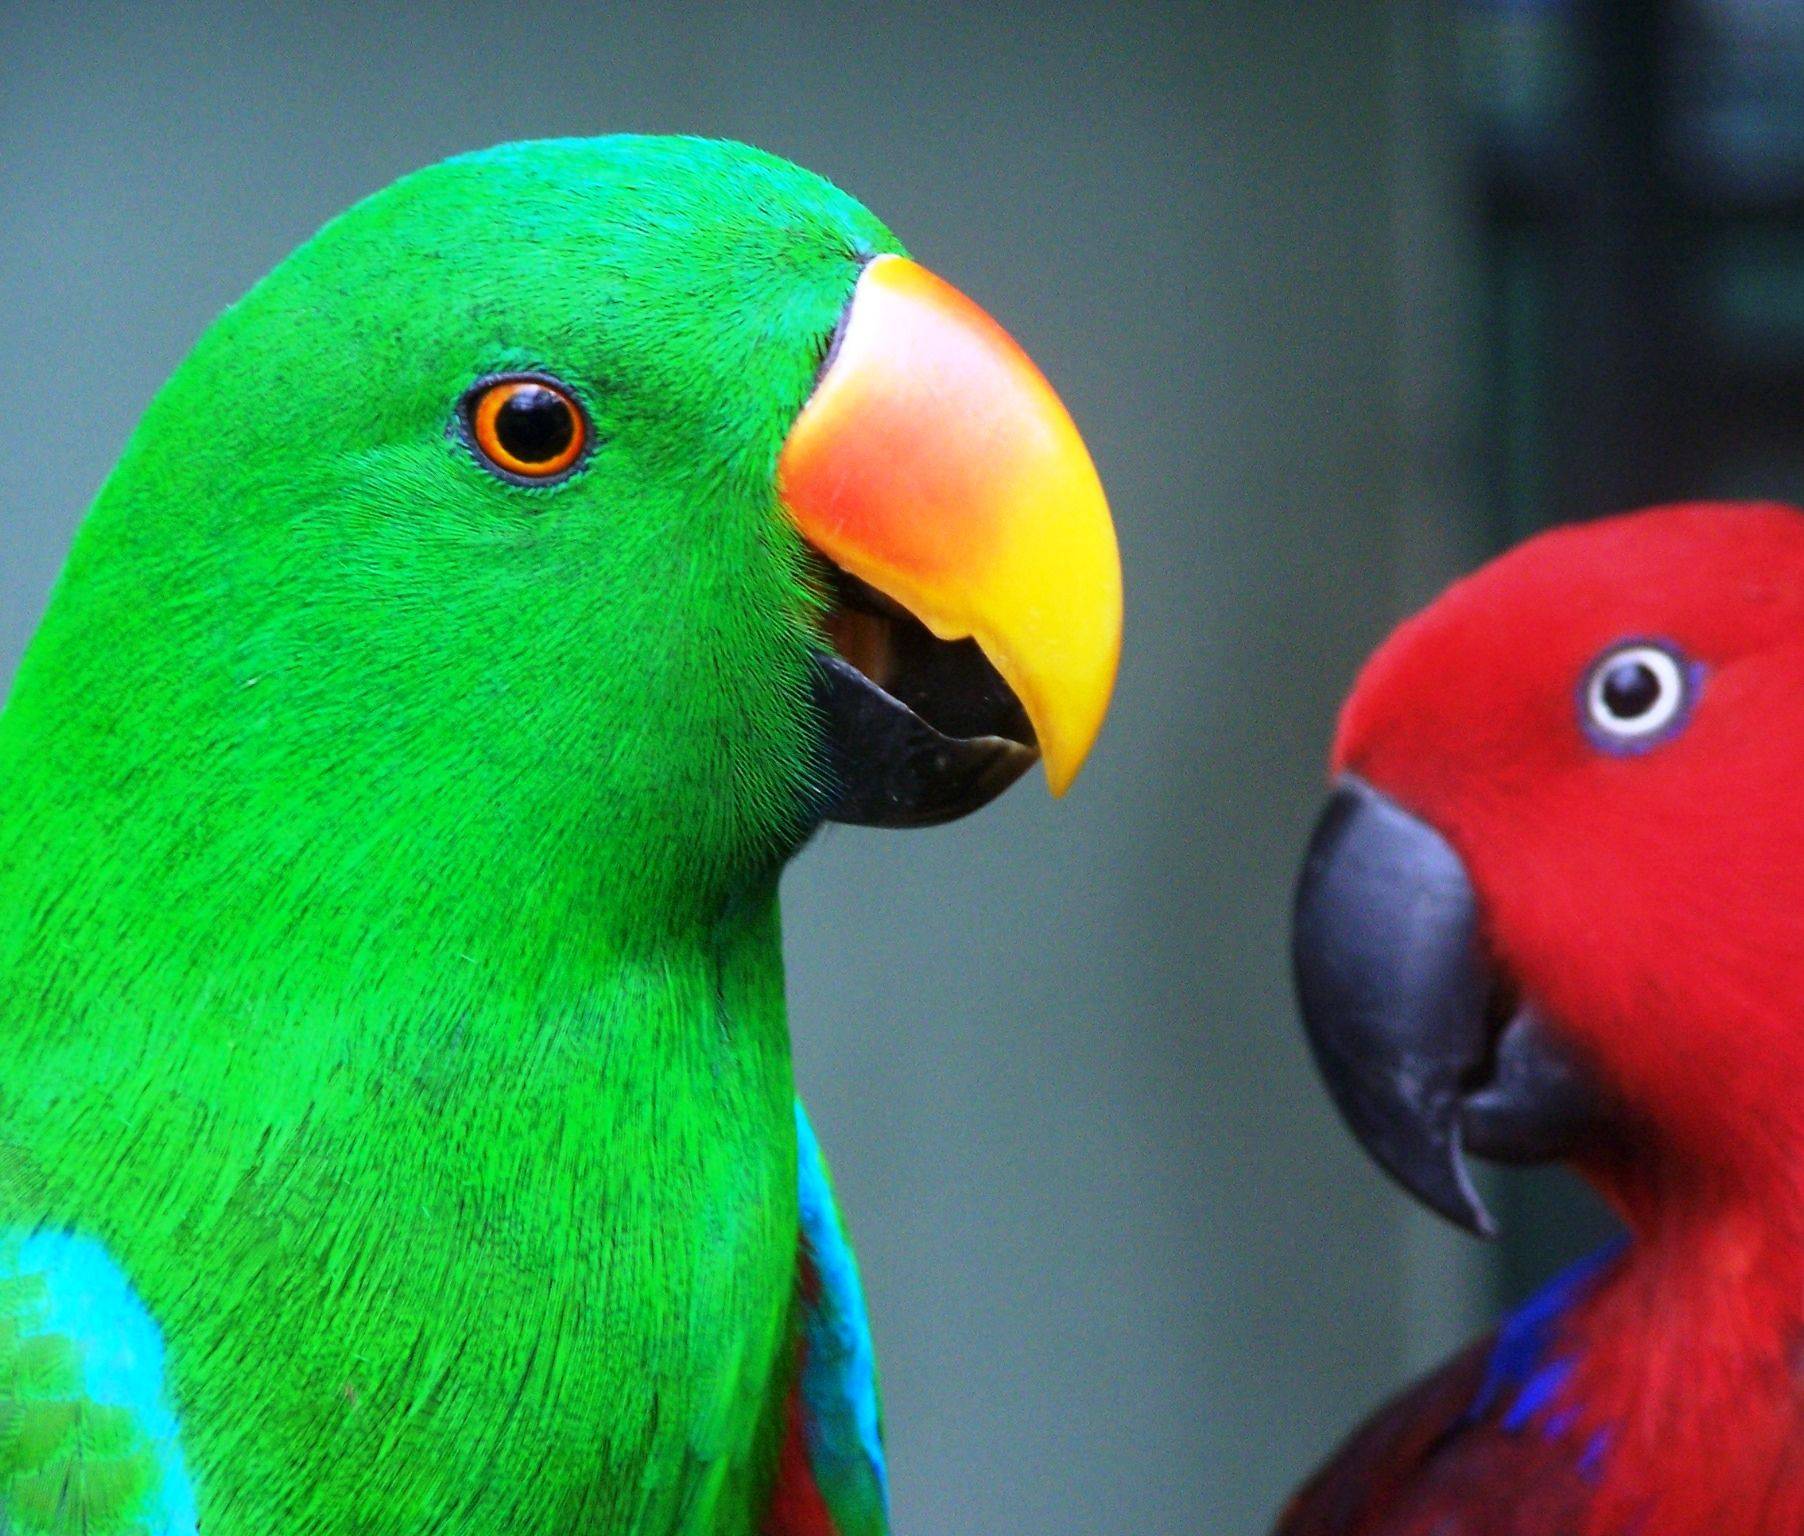 Популярные виды средних по размеру попугаев